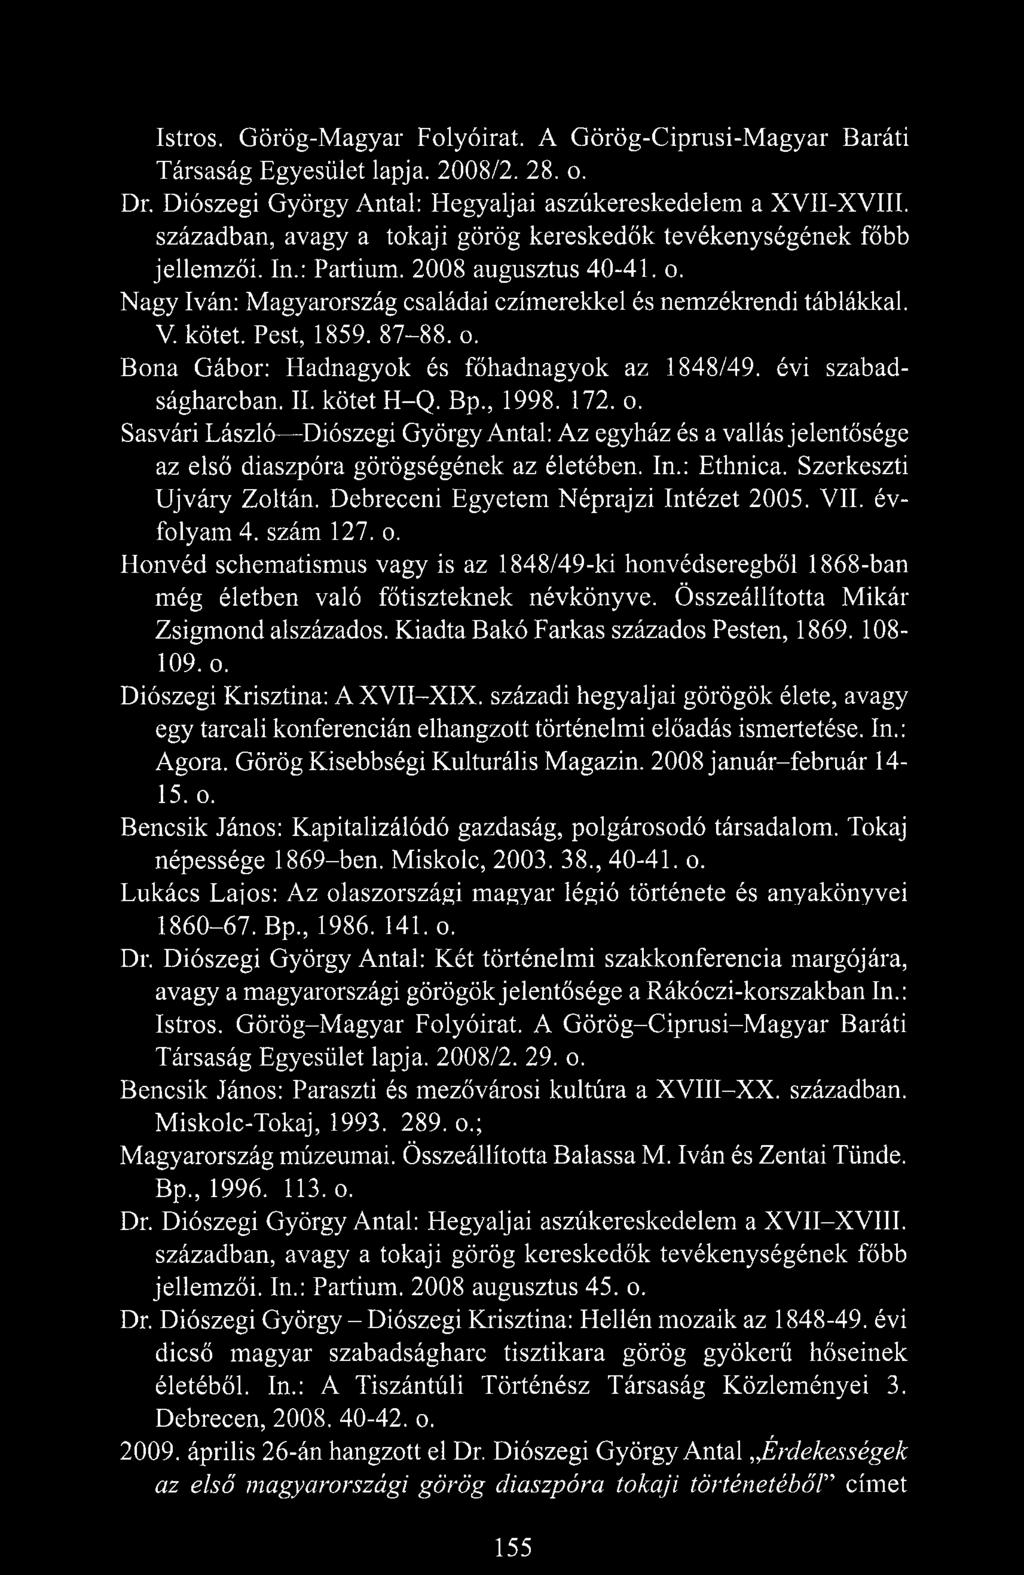 Pest, 1859. 87-88.0. Bona Gábor: Hadnagyok és főhadnagyok az 1848/49. évi szabadságharcban. II. kötet H-Q. Bp., 1998. 172. o.